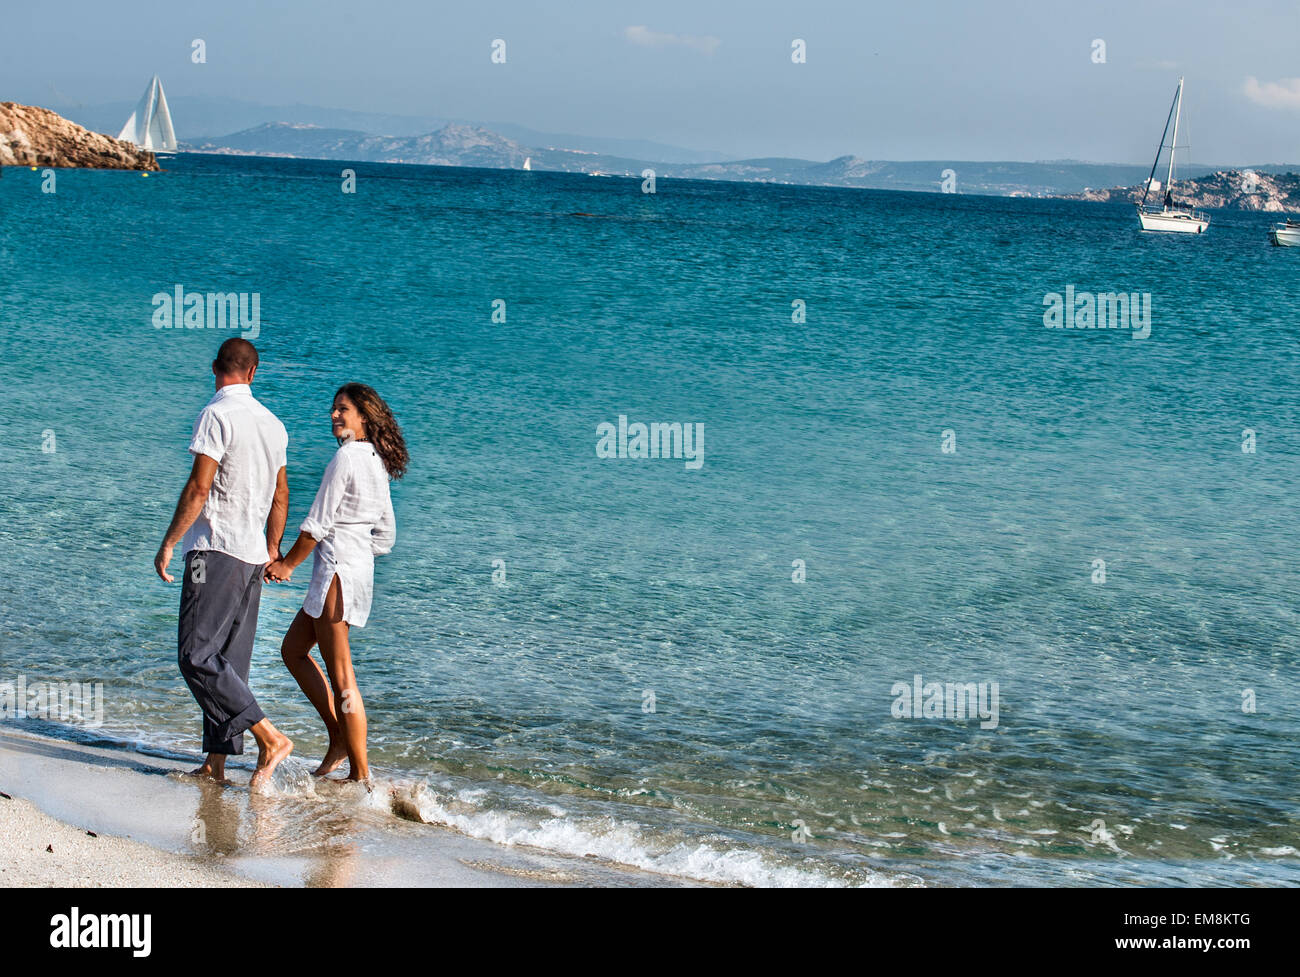 Giovane camminando mano nella mano lungo la spiaggia Foto Stock